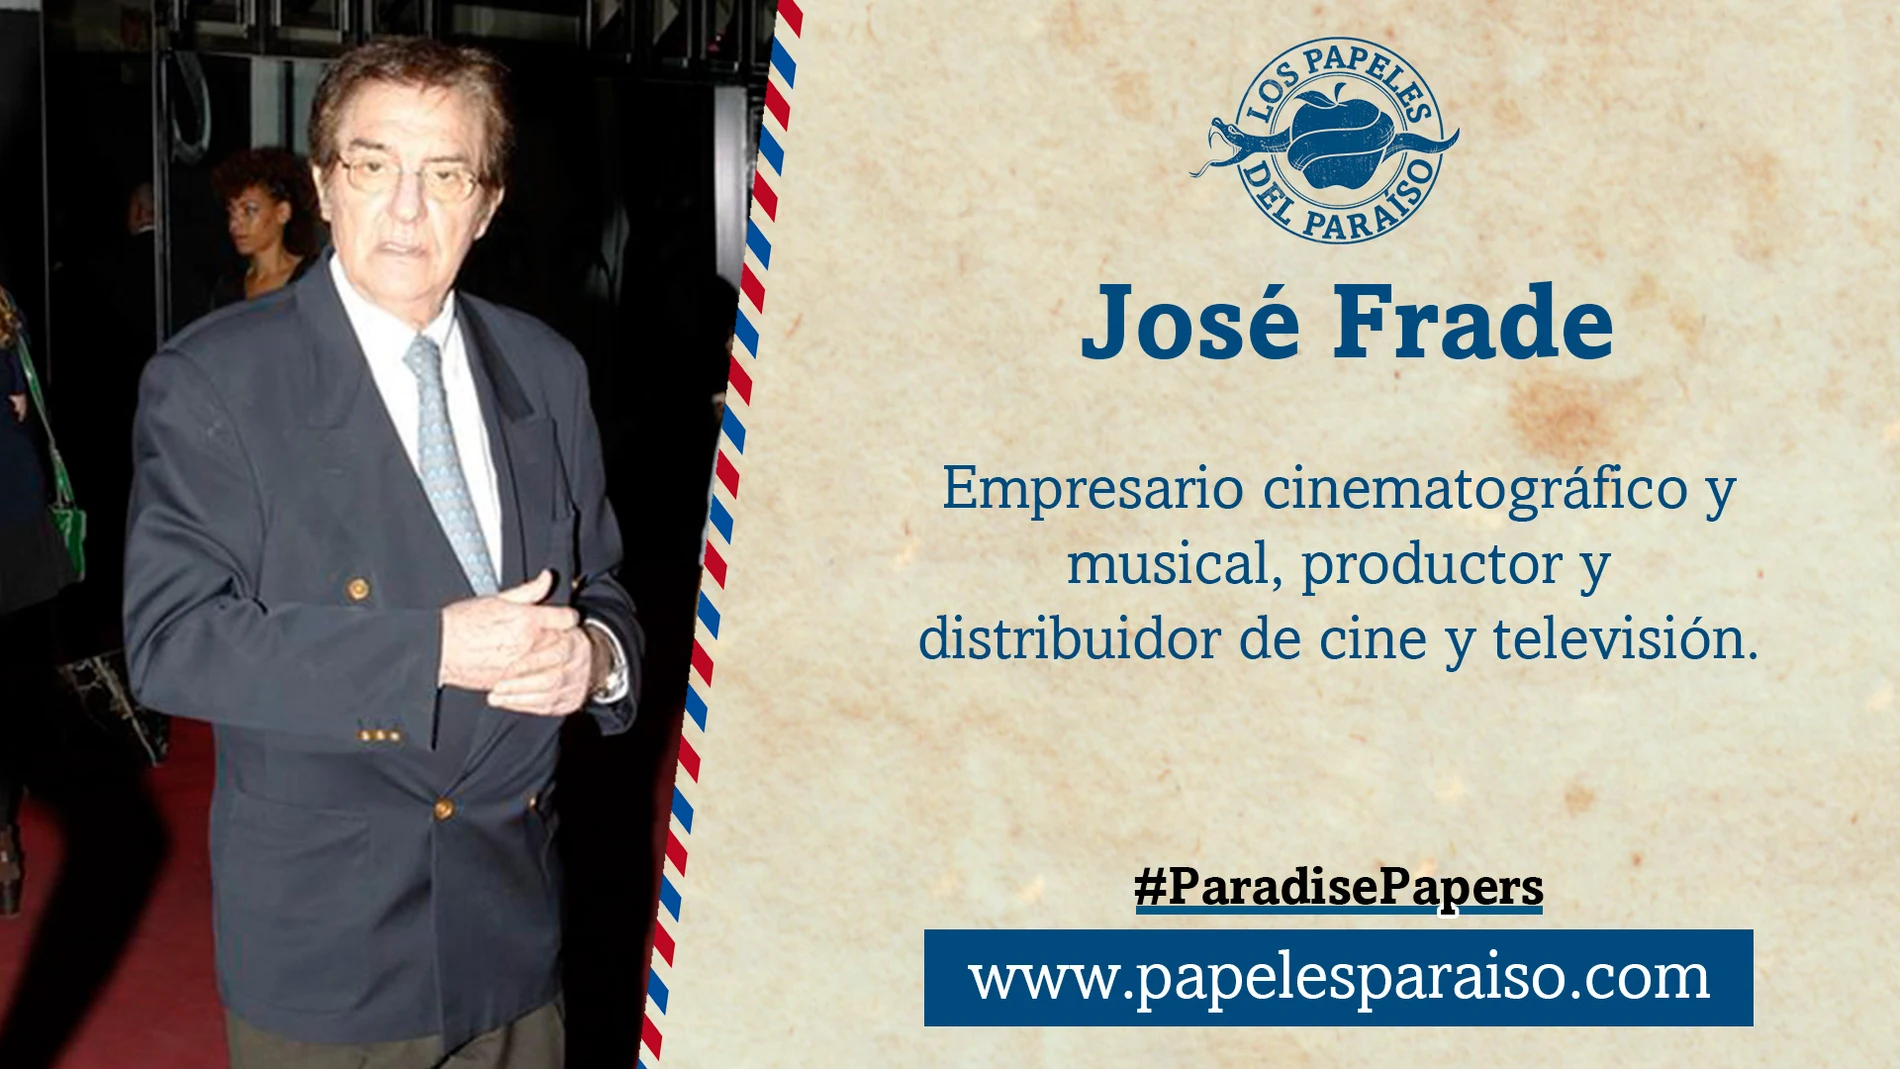 El productor José Frade aparece en los Papeles del Paraíso